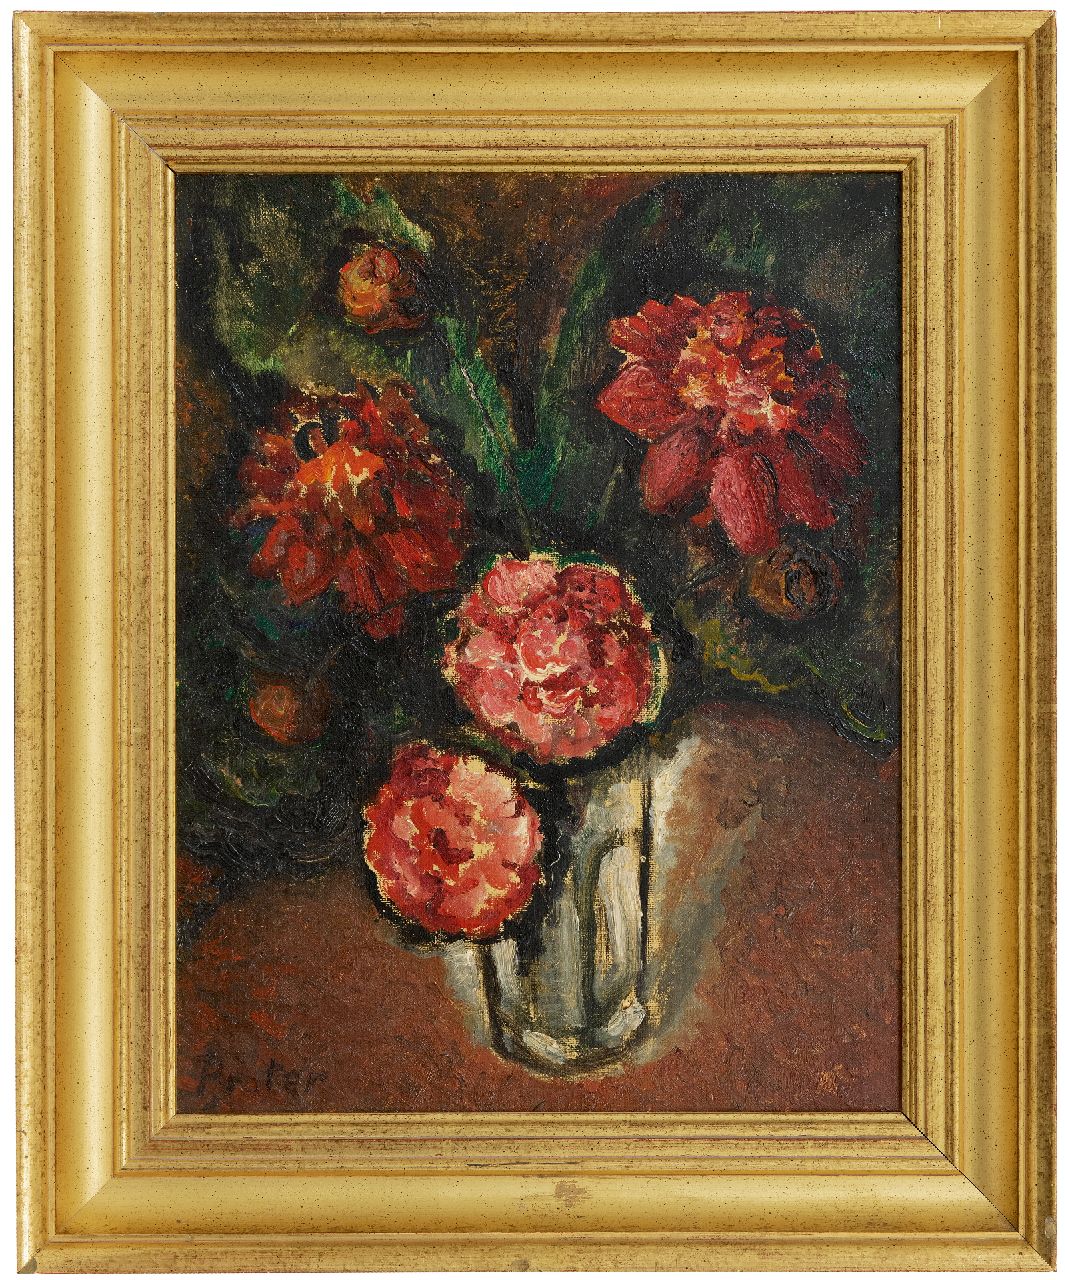 Praetere J. De | Jules De Praetere | Schilderijen te koop aangeboden | Rode bloemen, olieverf op doek 45,7 x 34,7 cm, gesigneerd linksonder